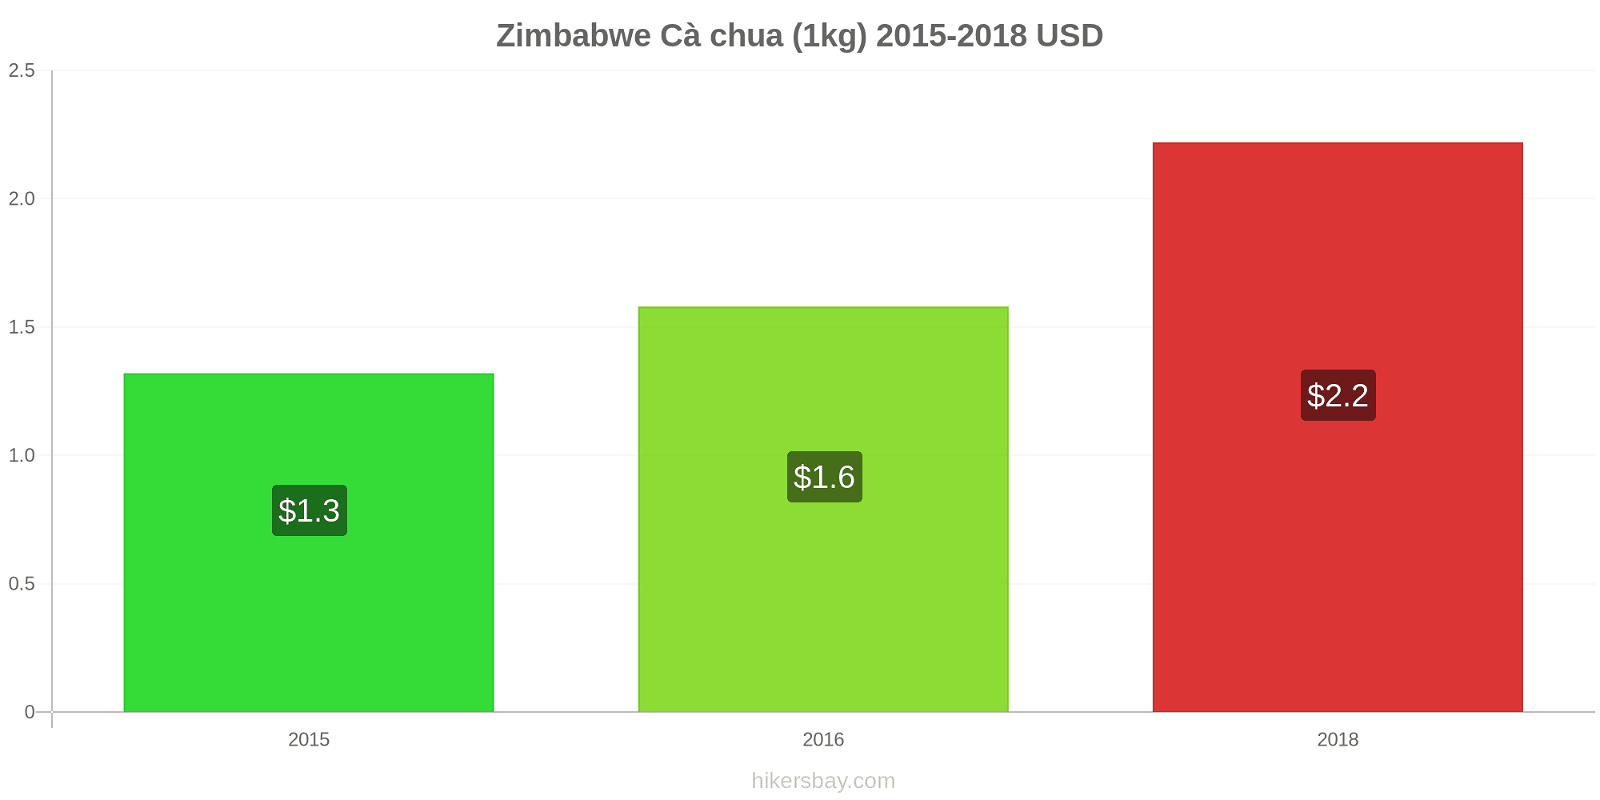 Zimbabwe thay đổi giá Cà chua (1kg) hikersbay.com